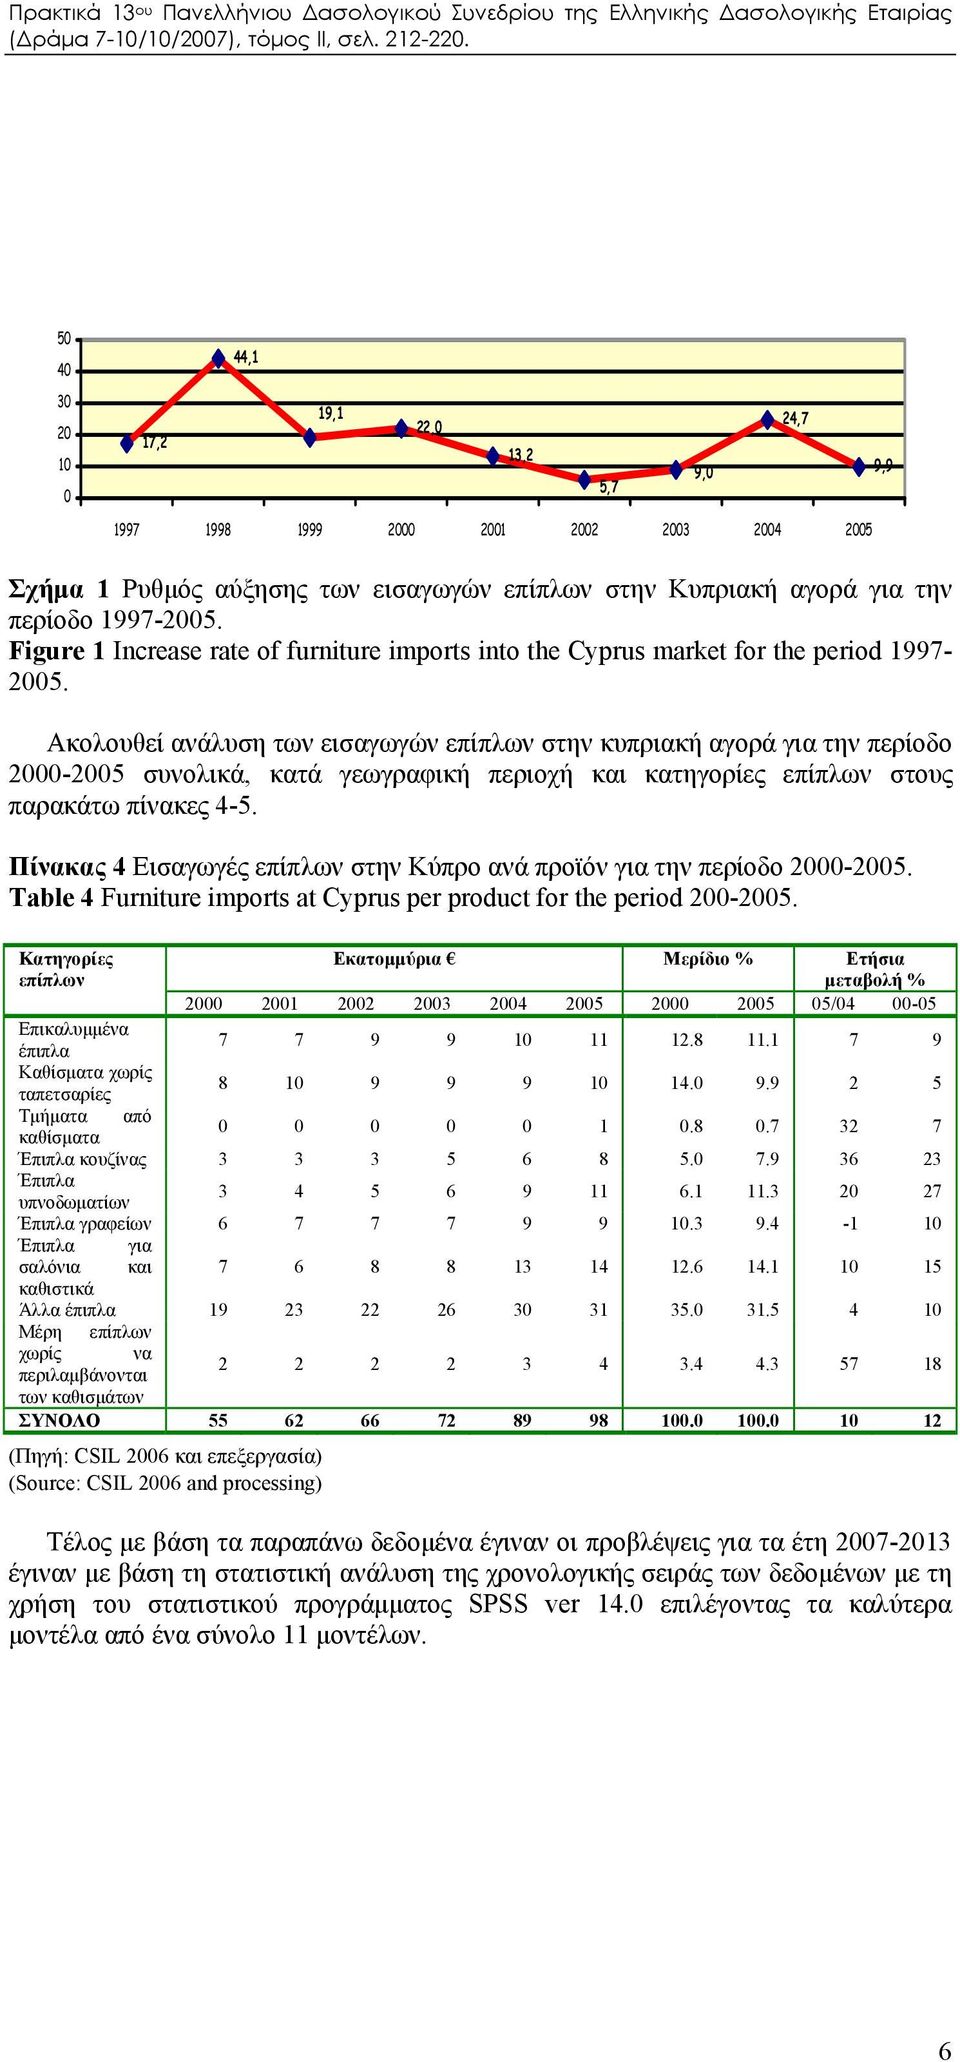 Ακολουθεί ανάλυση των εισαγωγών επίπλων στην κυπριακή αγορά για την περίοδο 2000-2005 συνολικά, κατά γεωγραφική περιοχή και κατηγορίες επίπλων στους παρακάτω πίνακες 4-5.